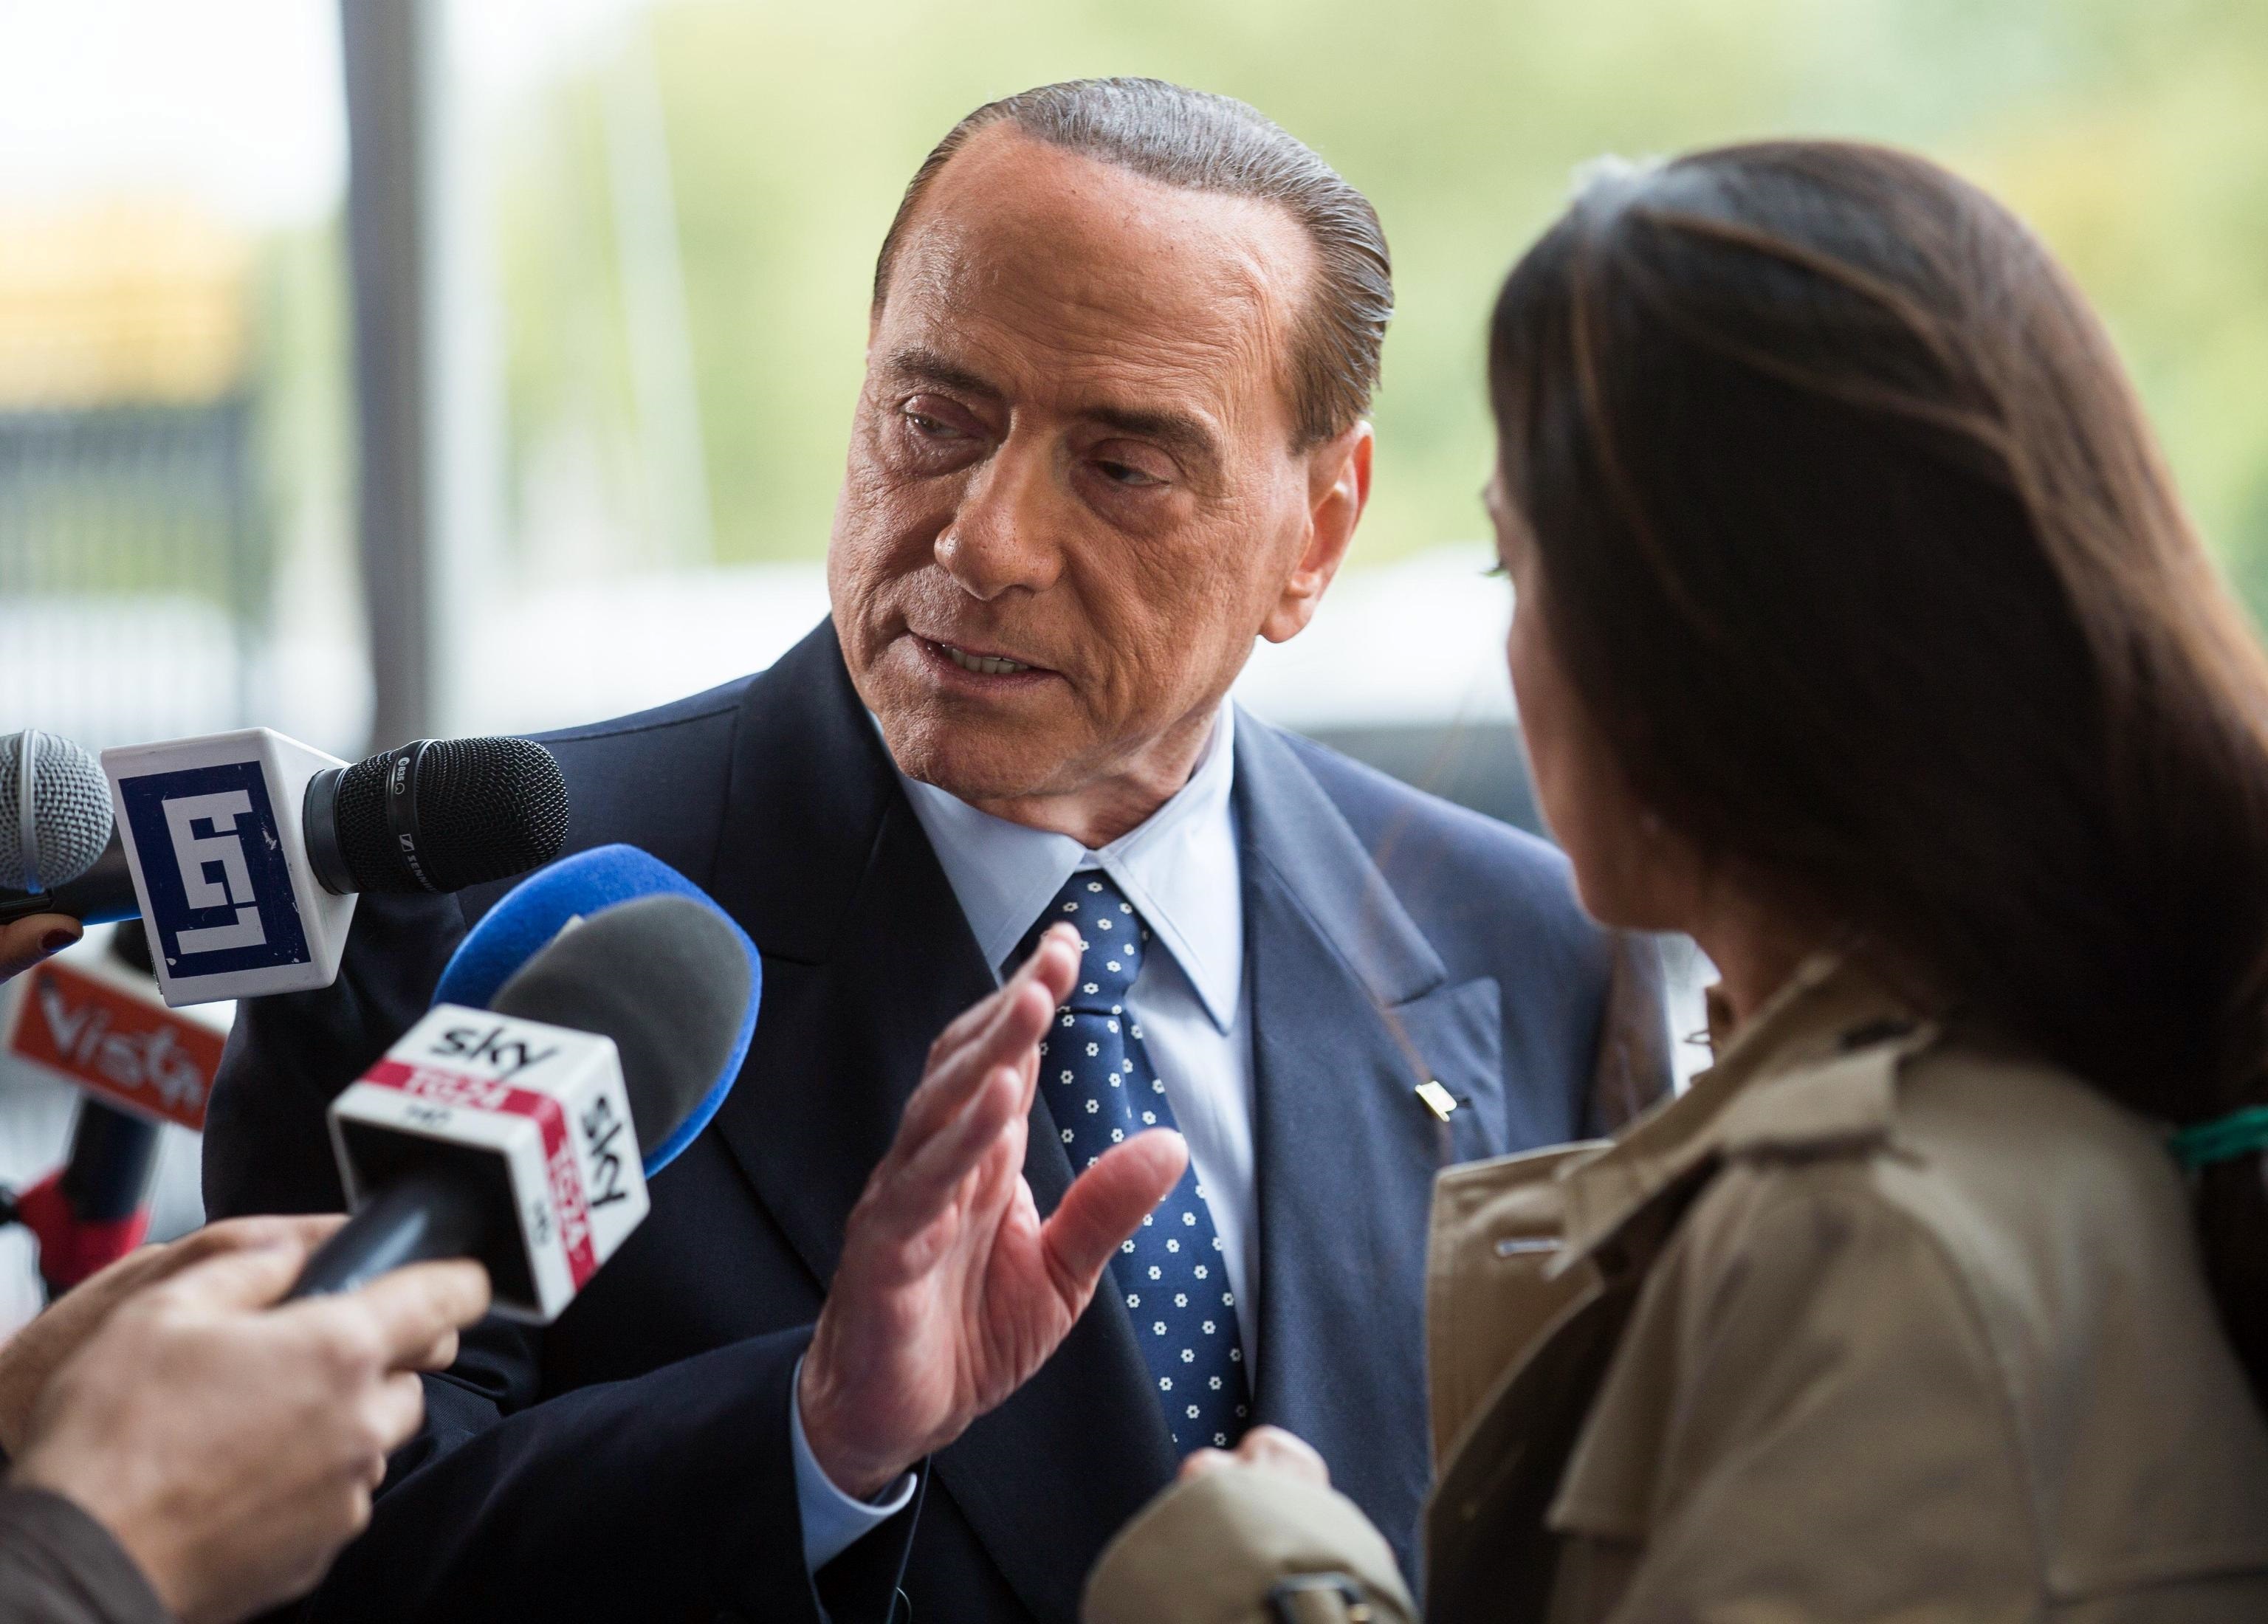 Berlusconi: denunciare irregolari, “bomba sociale”